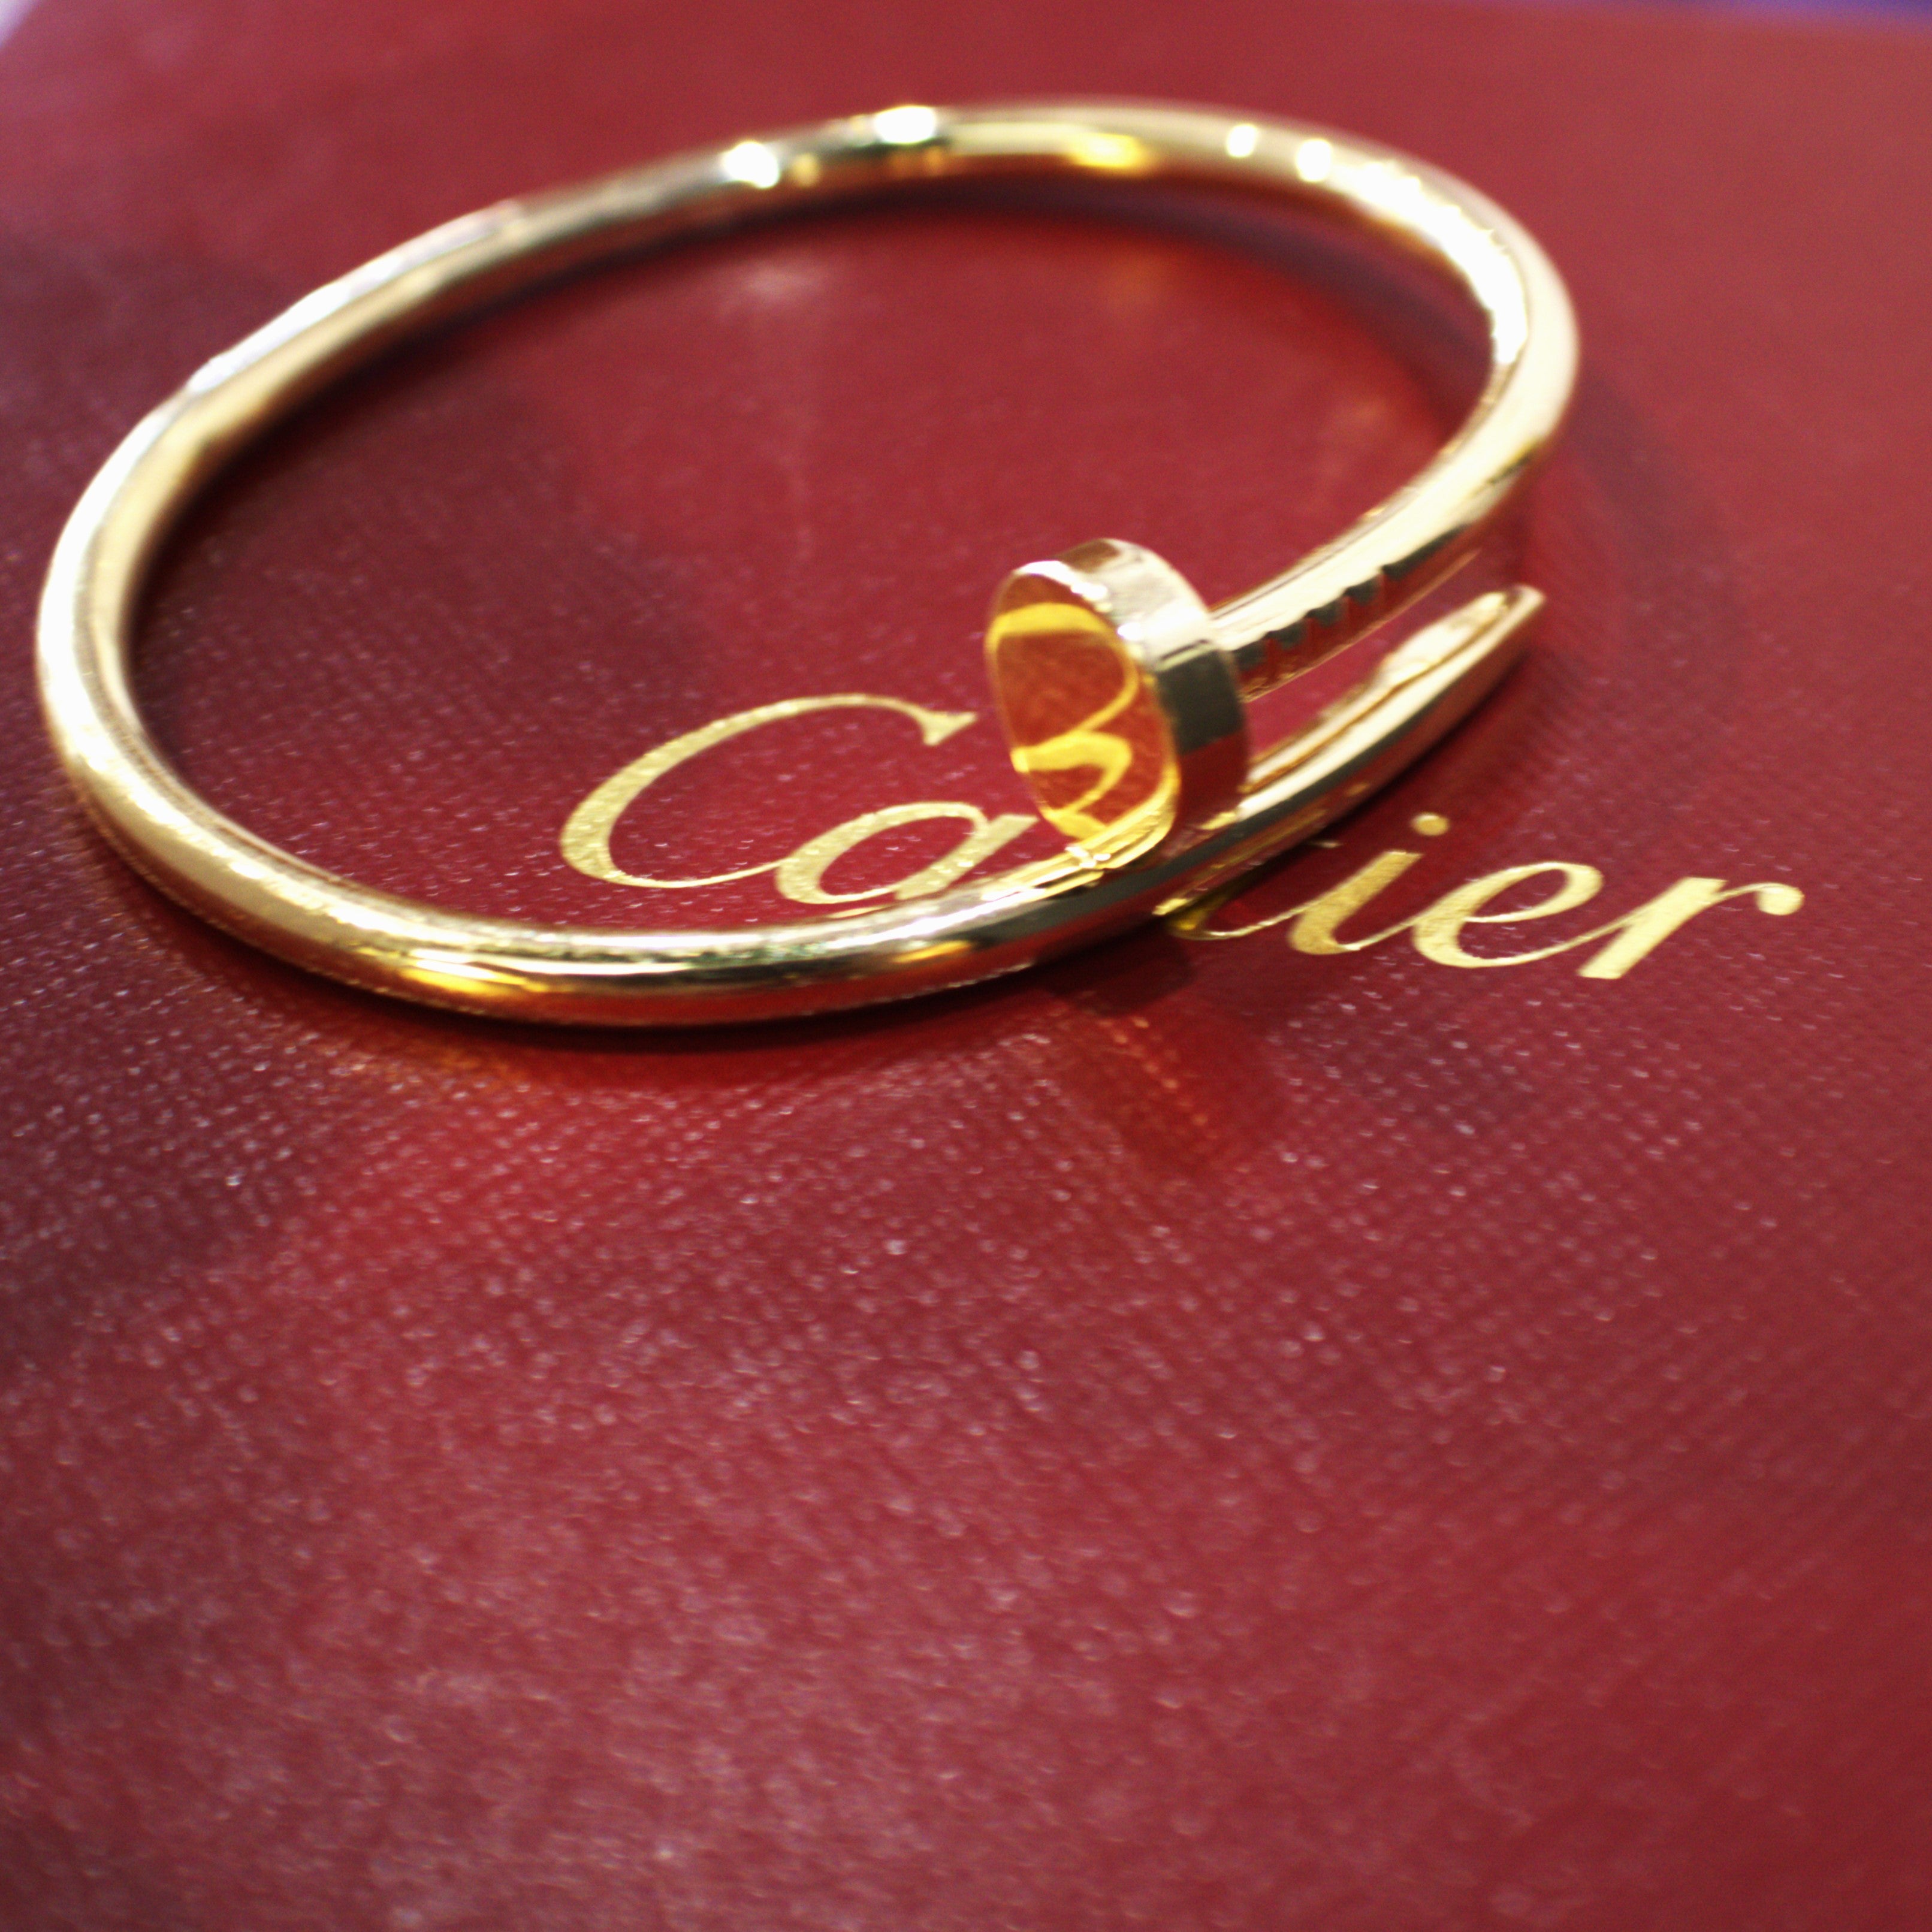 Cartier Juste Un Clou Bracelet With Box